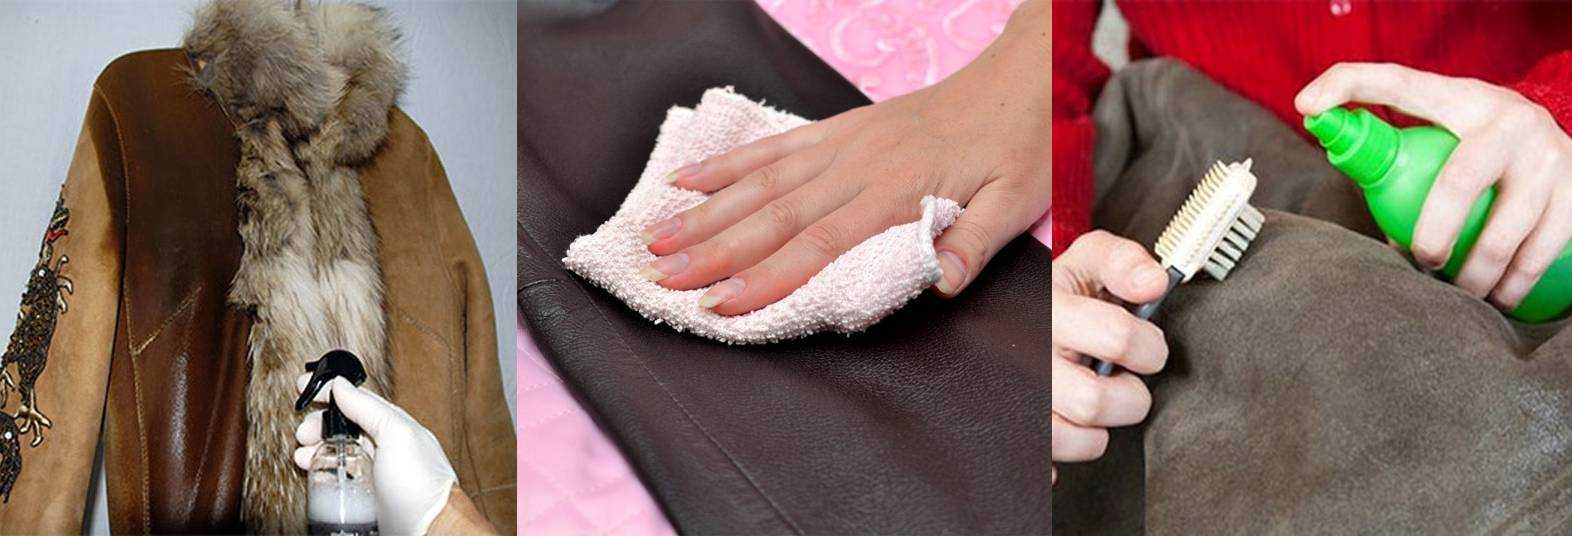 Как чистить пиджак из ткани, кожи или замша